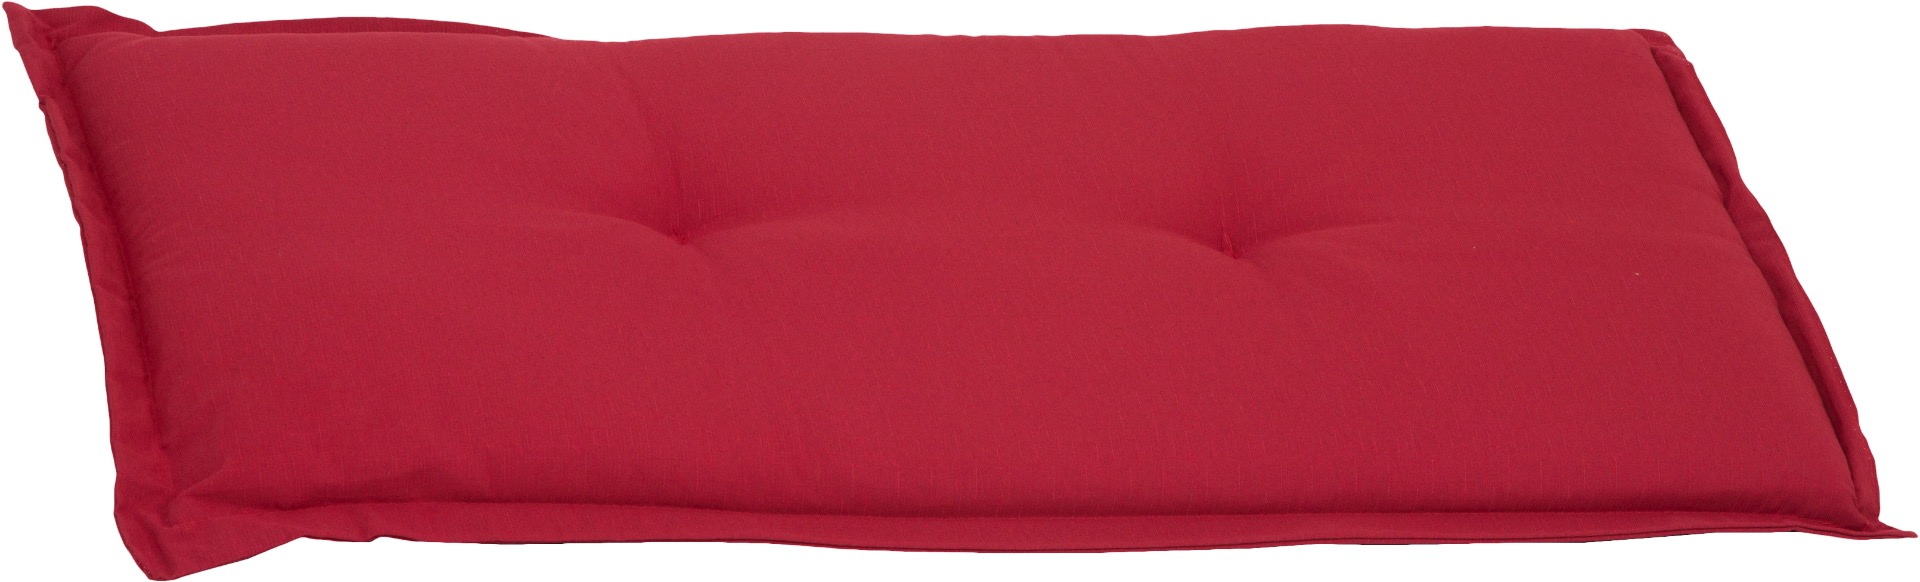 Bankauflage 2-Sitzer Sitzkissen ca. 100x45x6 cm rot meliert